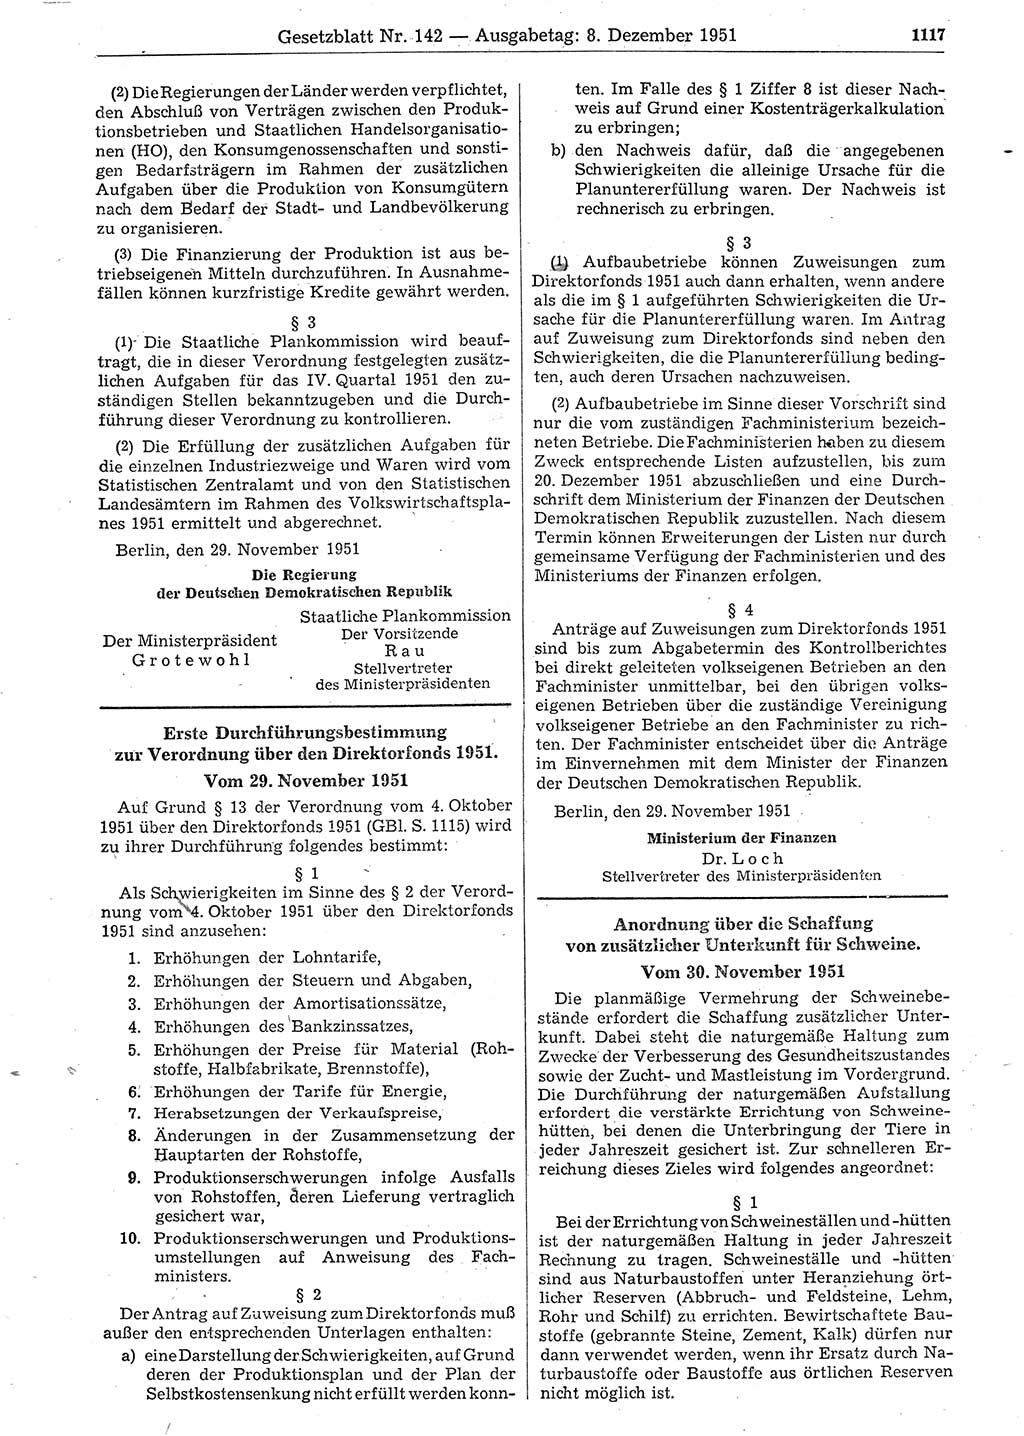 Gesetzblatt (GBl.) der Deutschen Demokratischen Republik (DDR) 1951, Seite 1117 (GBl. DDR 1951, S. 1117)